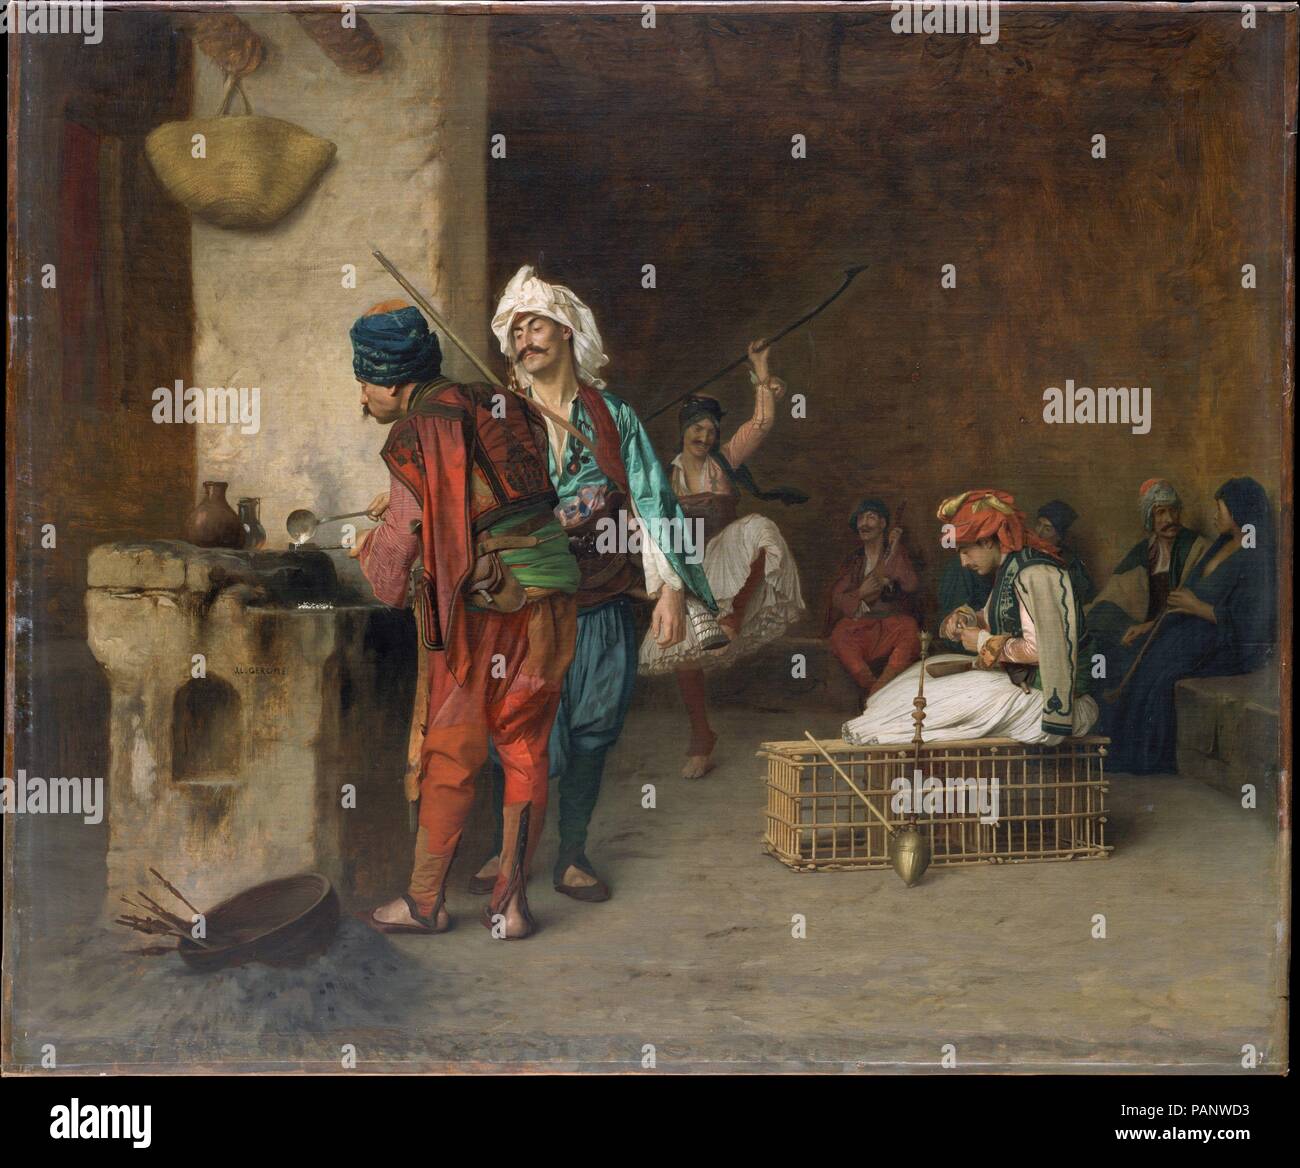 Cafe House, Le Caire (Casting des points). Artiste : Jean-Léon Gérôme (Français, Vesoul 1824-1904 Paris). Dimensions : 21 1/2 x 24 3/4 in. (54,6 x 62,9 cm). Date : 1884 ou plus tôt. Les Bashi bazouks, des mercenaires dans l'armée de le sultan turc, étaient connus pour leur brutalité et l'anarchie, mais Gérôme habituellement représentée à loisir, comme il l'a fait ici, plutôt qu'engagé dans la bataille. Ses fréquentes répétitions de l'objet sur une période de trente ans, en conjonction avec une technique qui est arrivée à échéance au début et il a peu changé, faire ces toiles difficiles à date sur la base du style seul. Gérôme probablement Banque D'Images